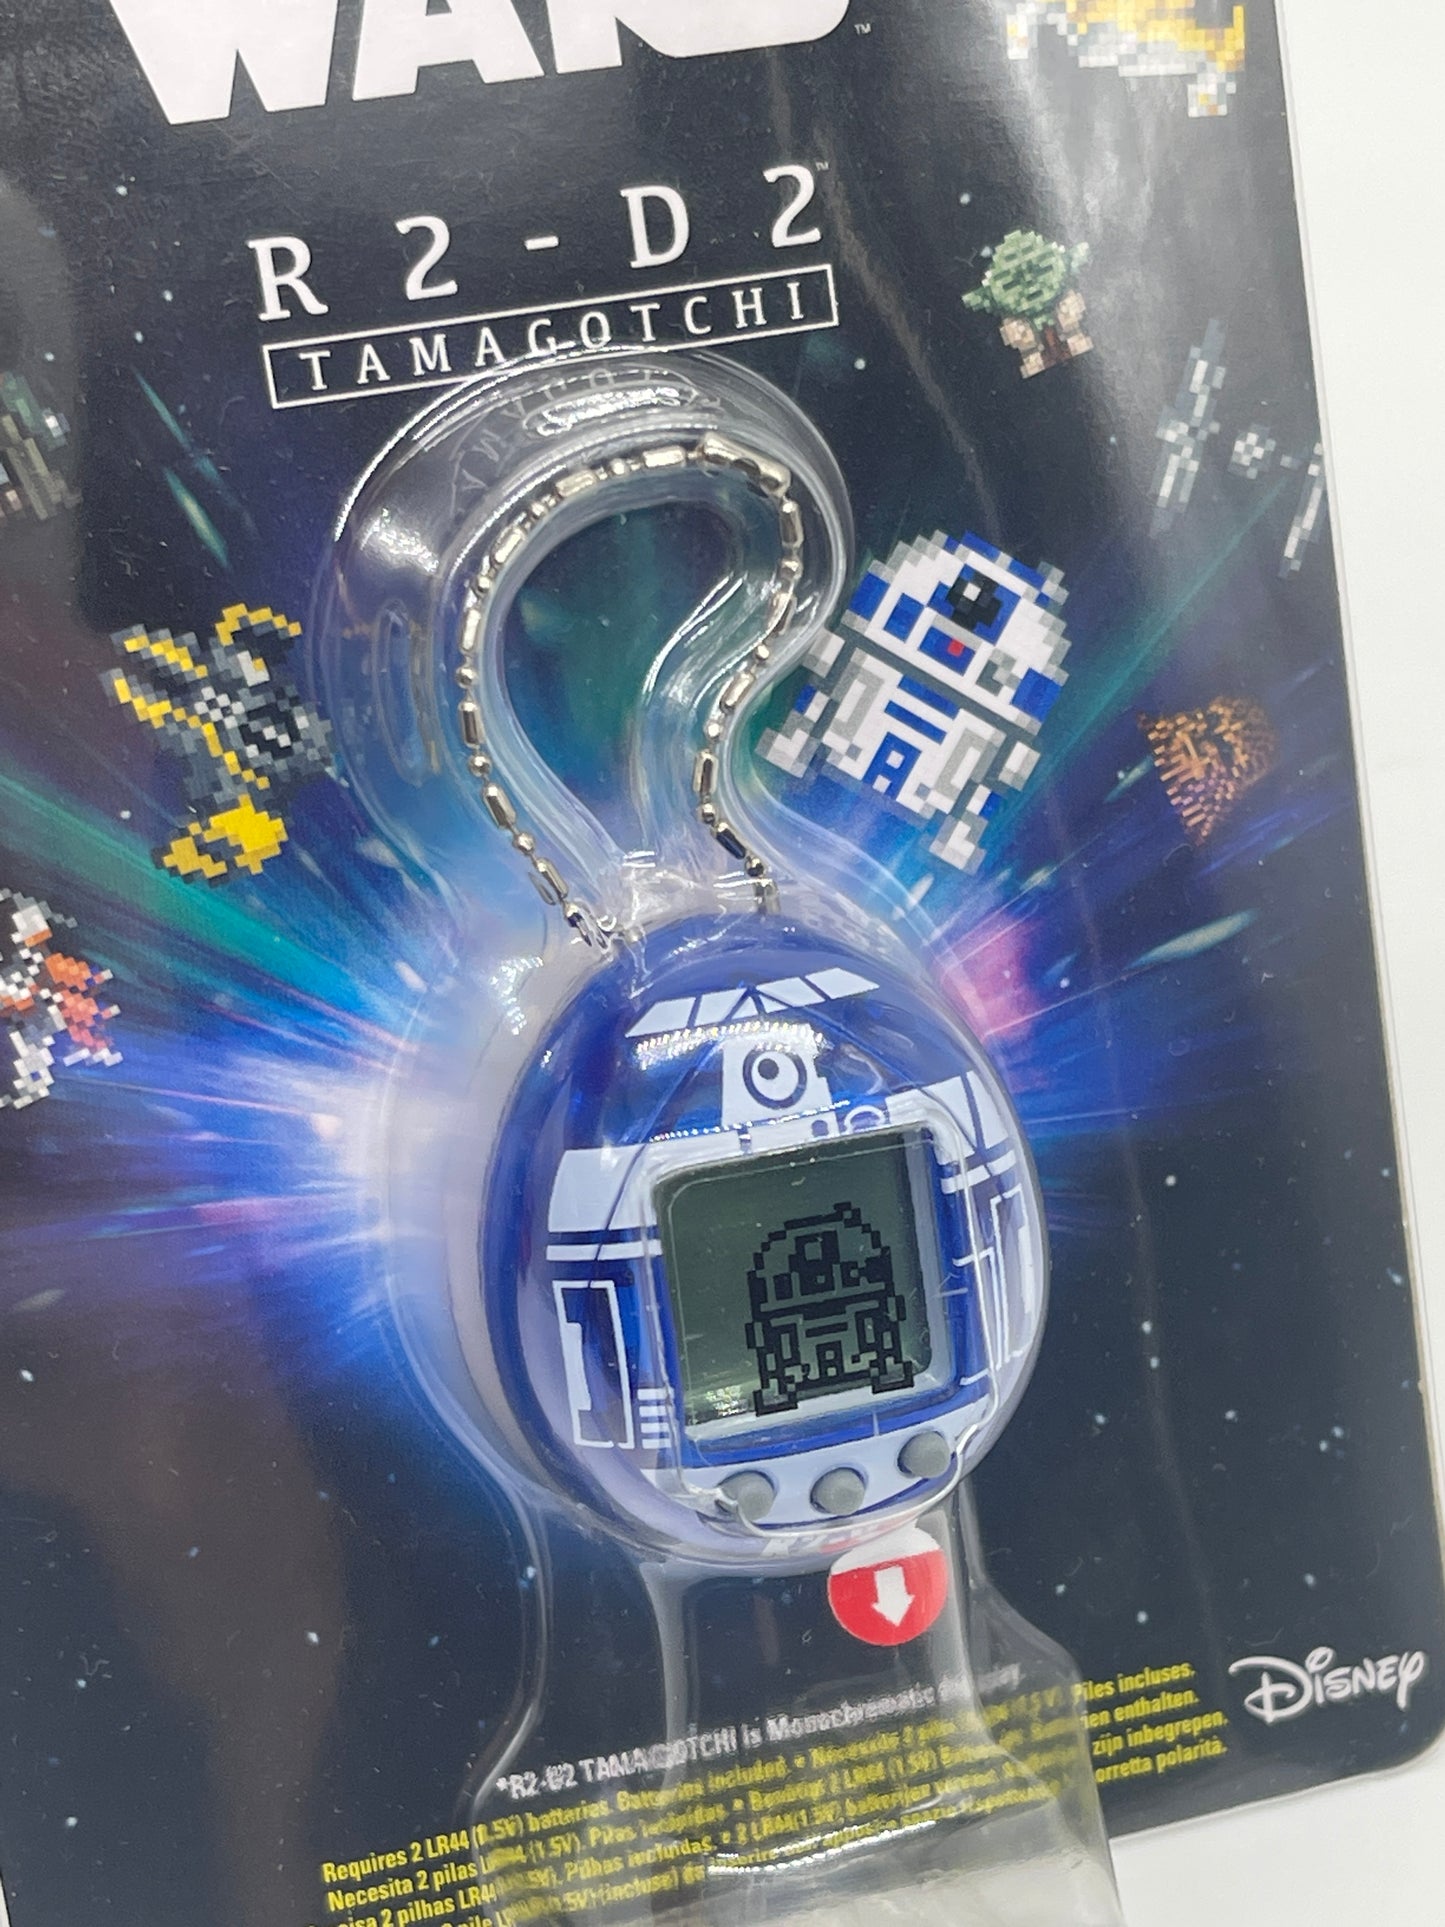 Star Wars "R2-D2 Tamagotchi" Trainiere deinen Droiden Bandai (2021)